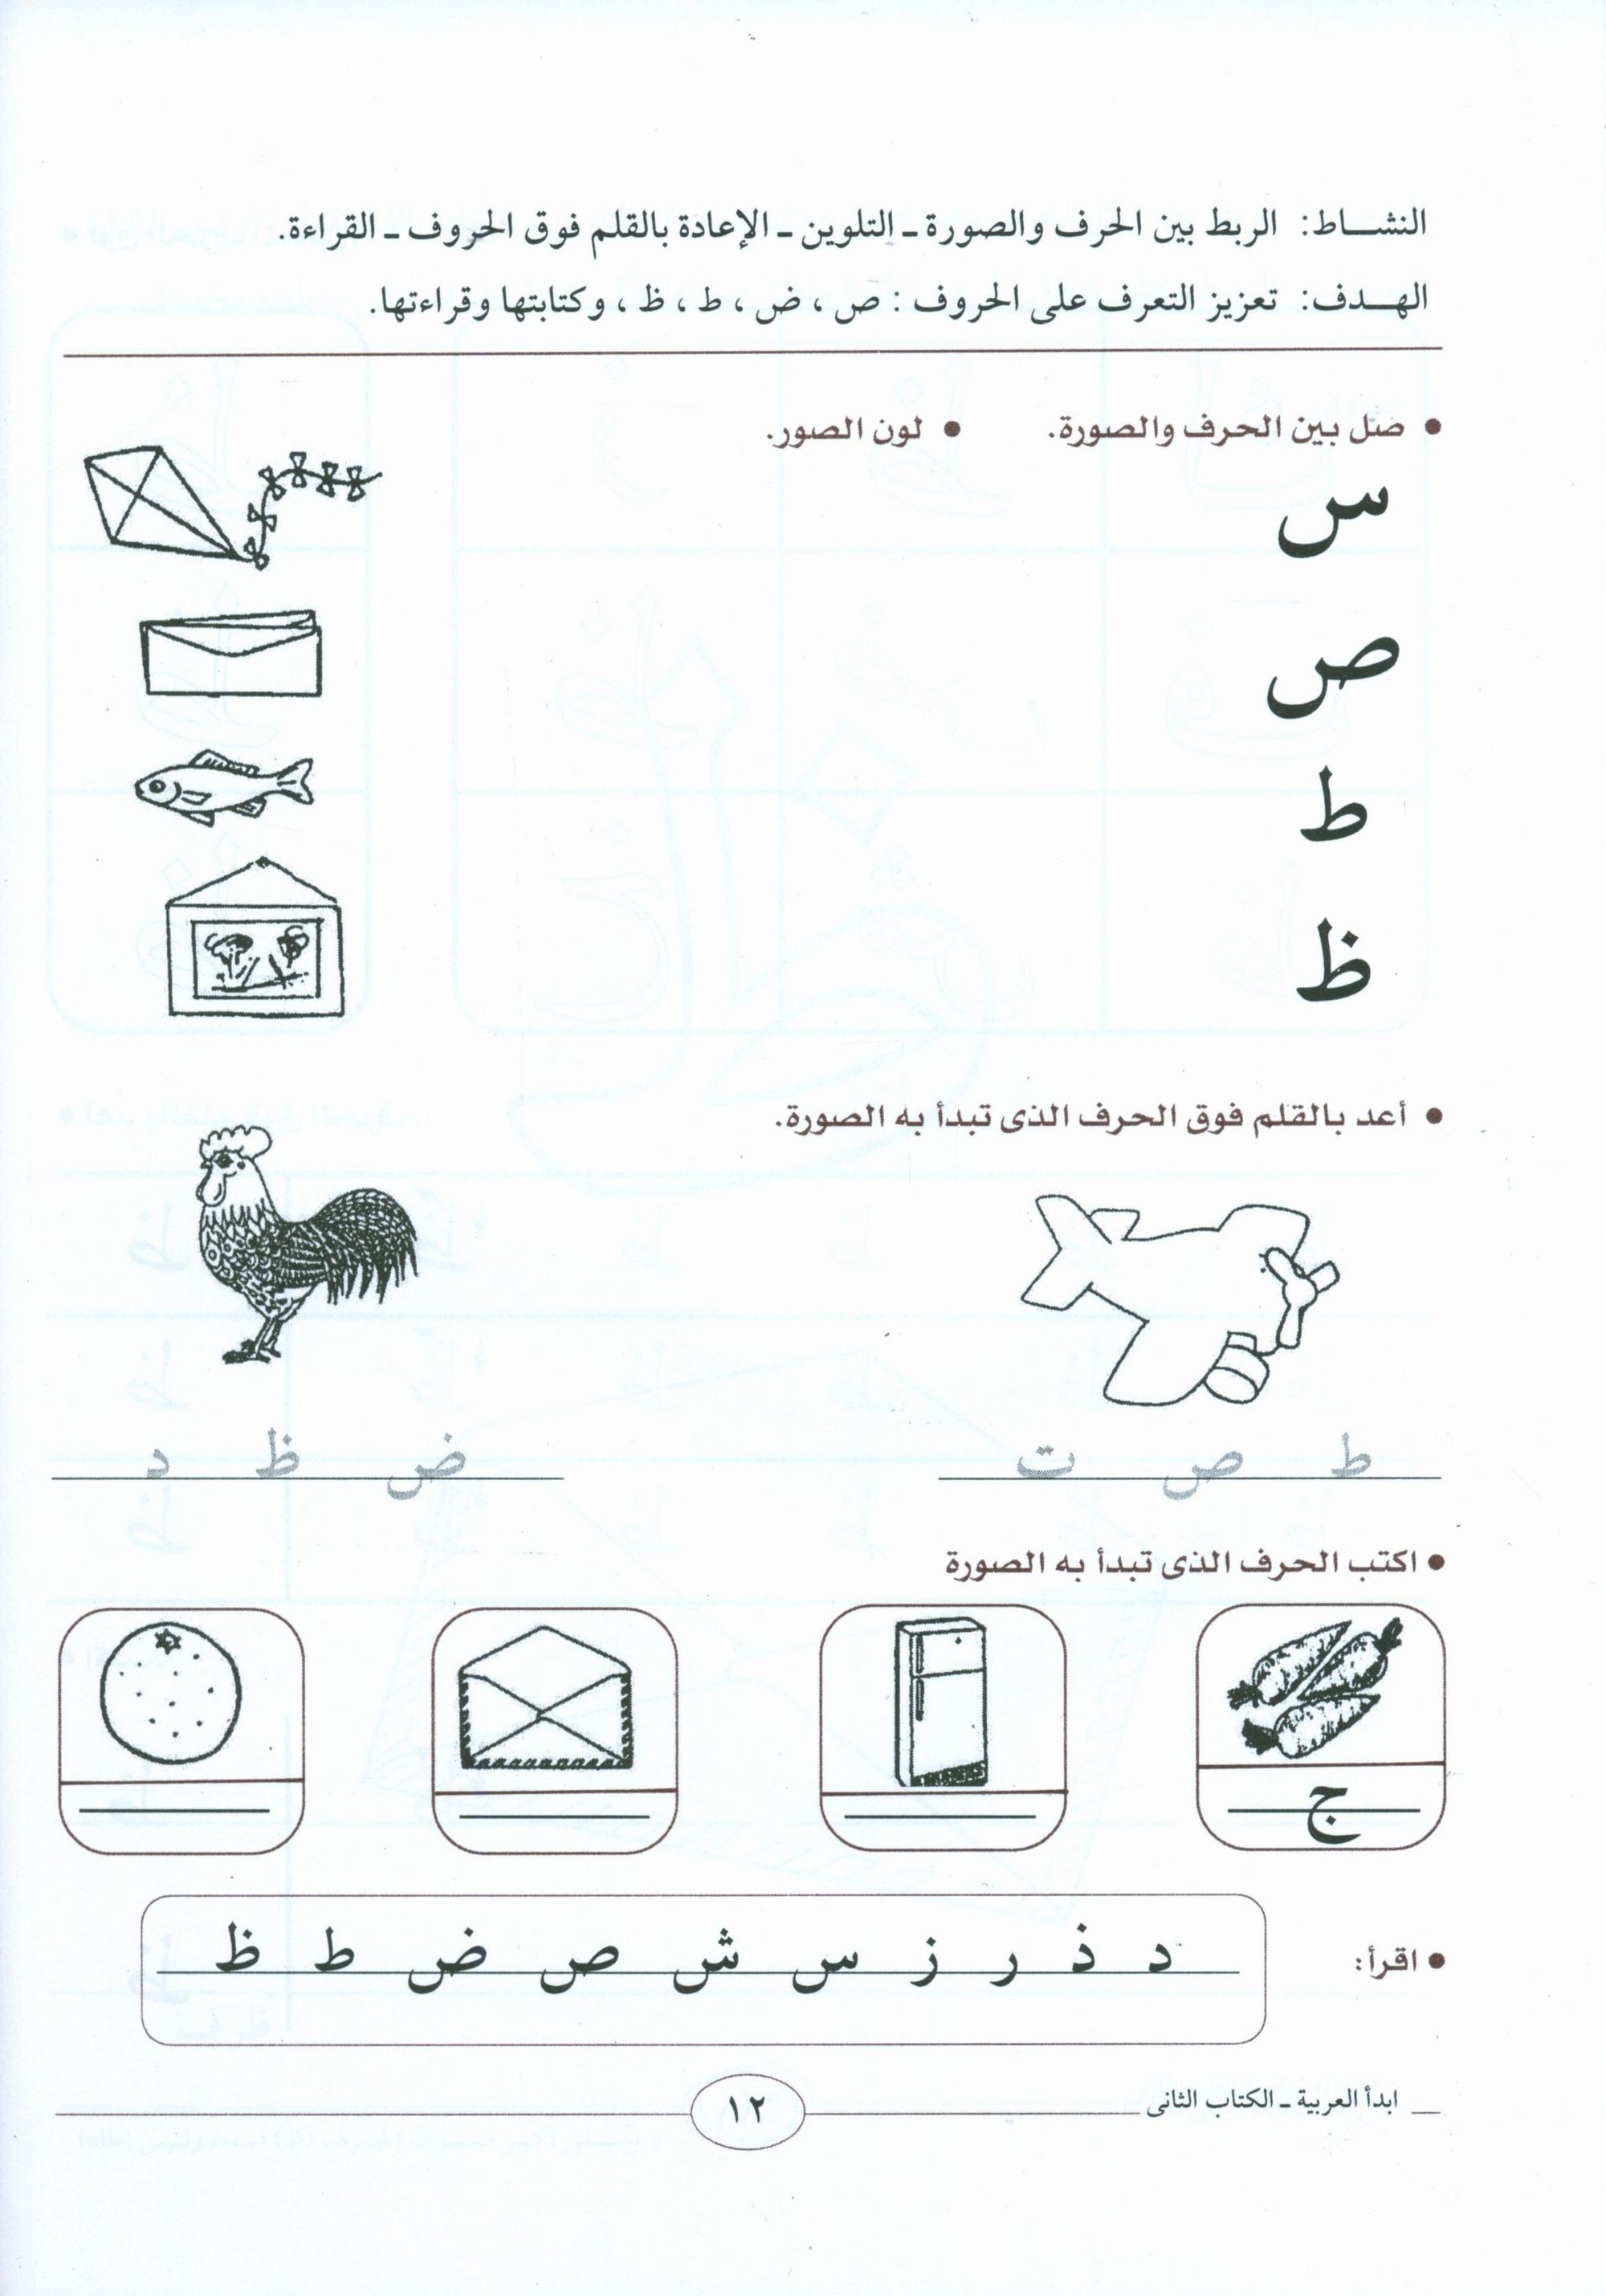 I Start Arabic Volume 2 أبدأ العربية